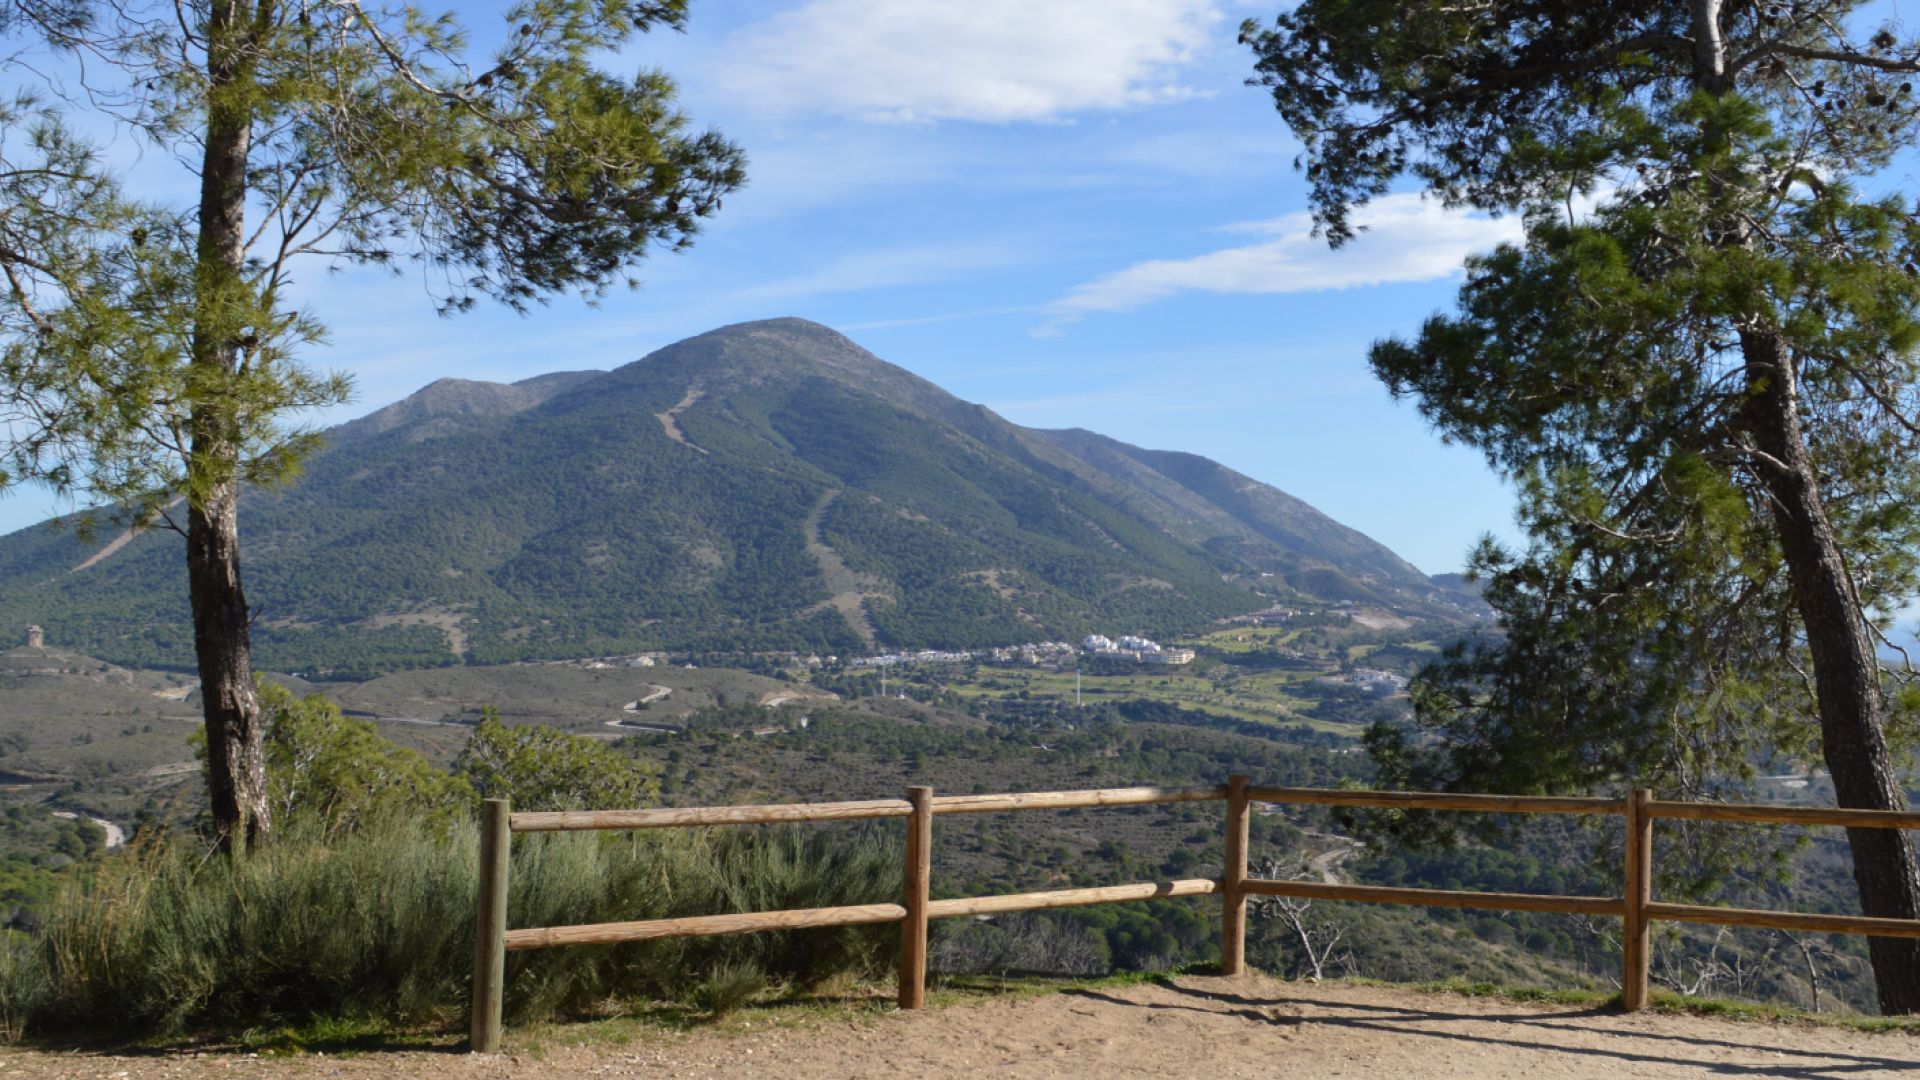 Mirador de Cerro Alaminos - Rincón singular